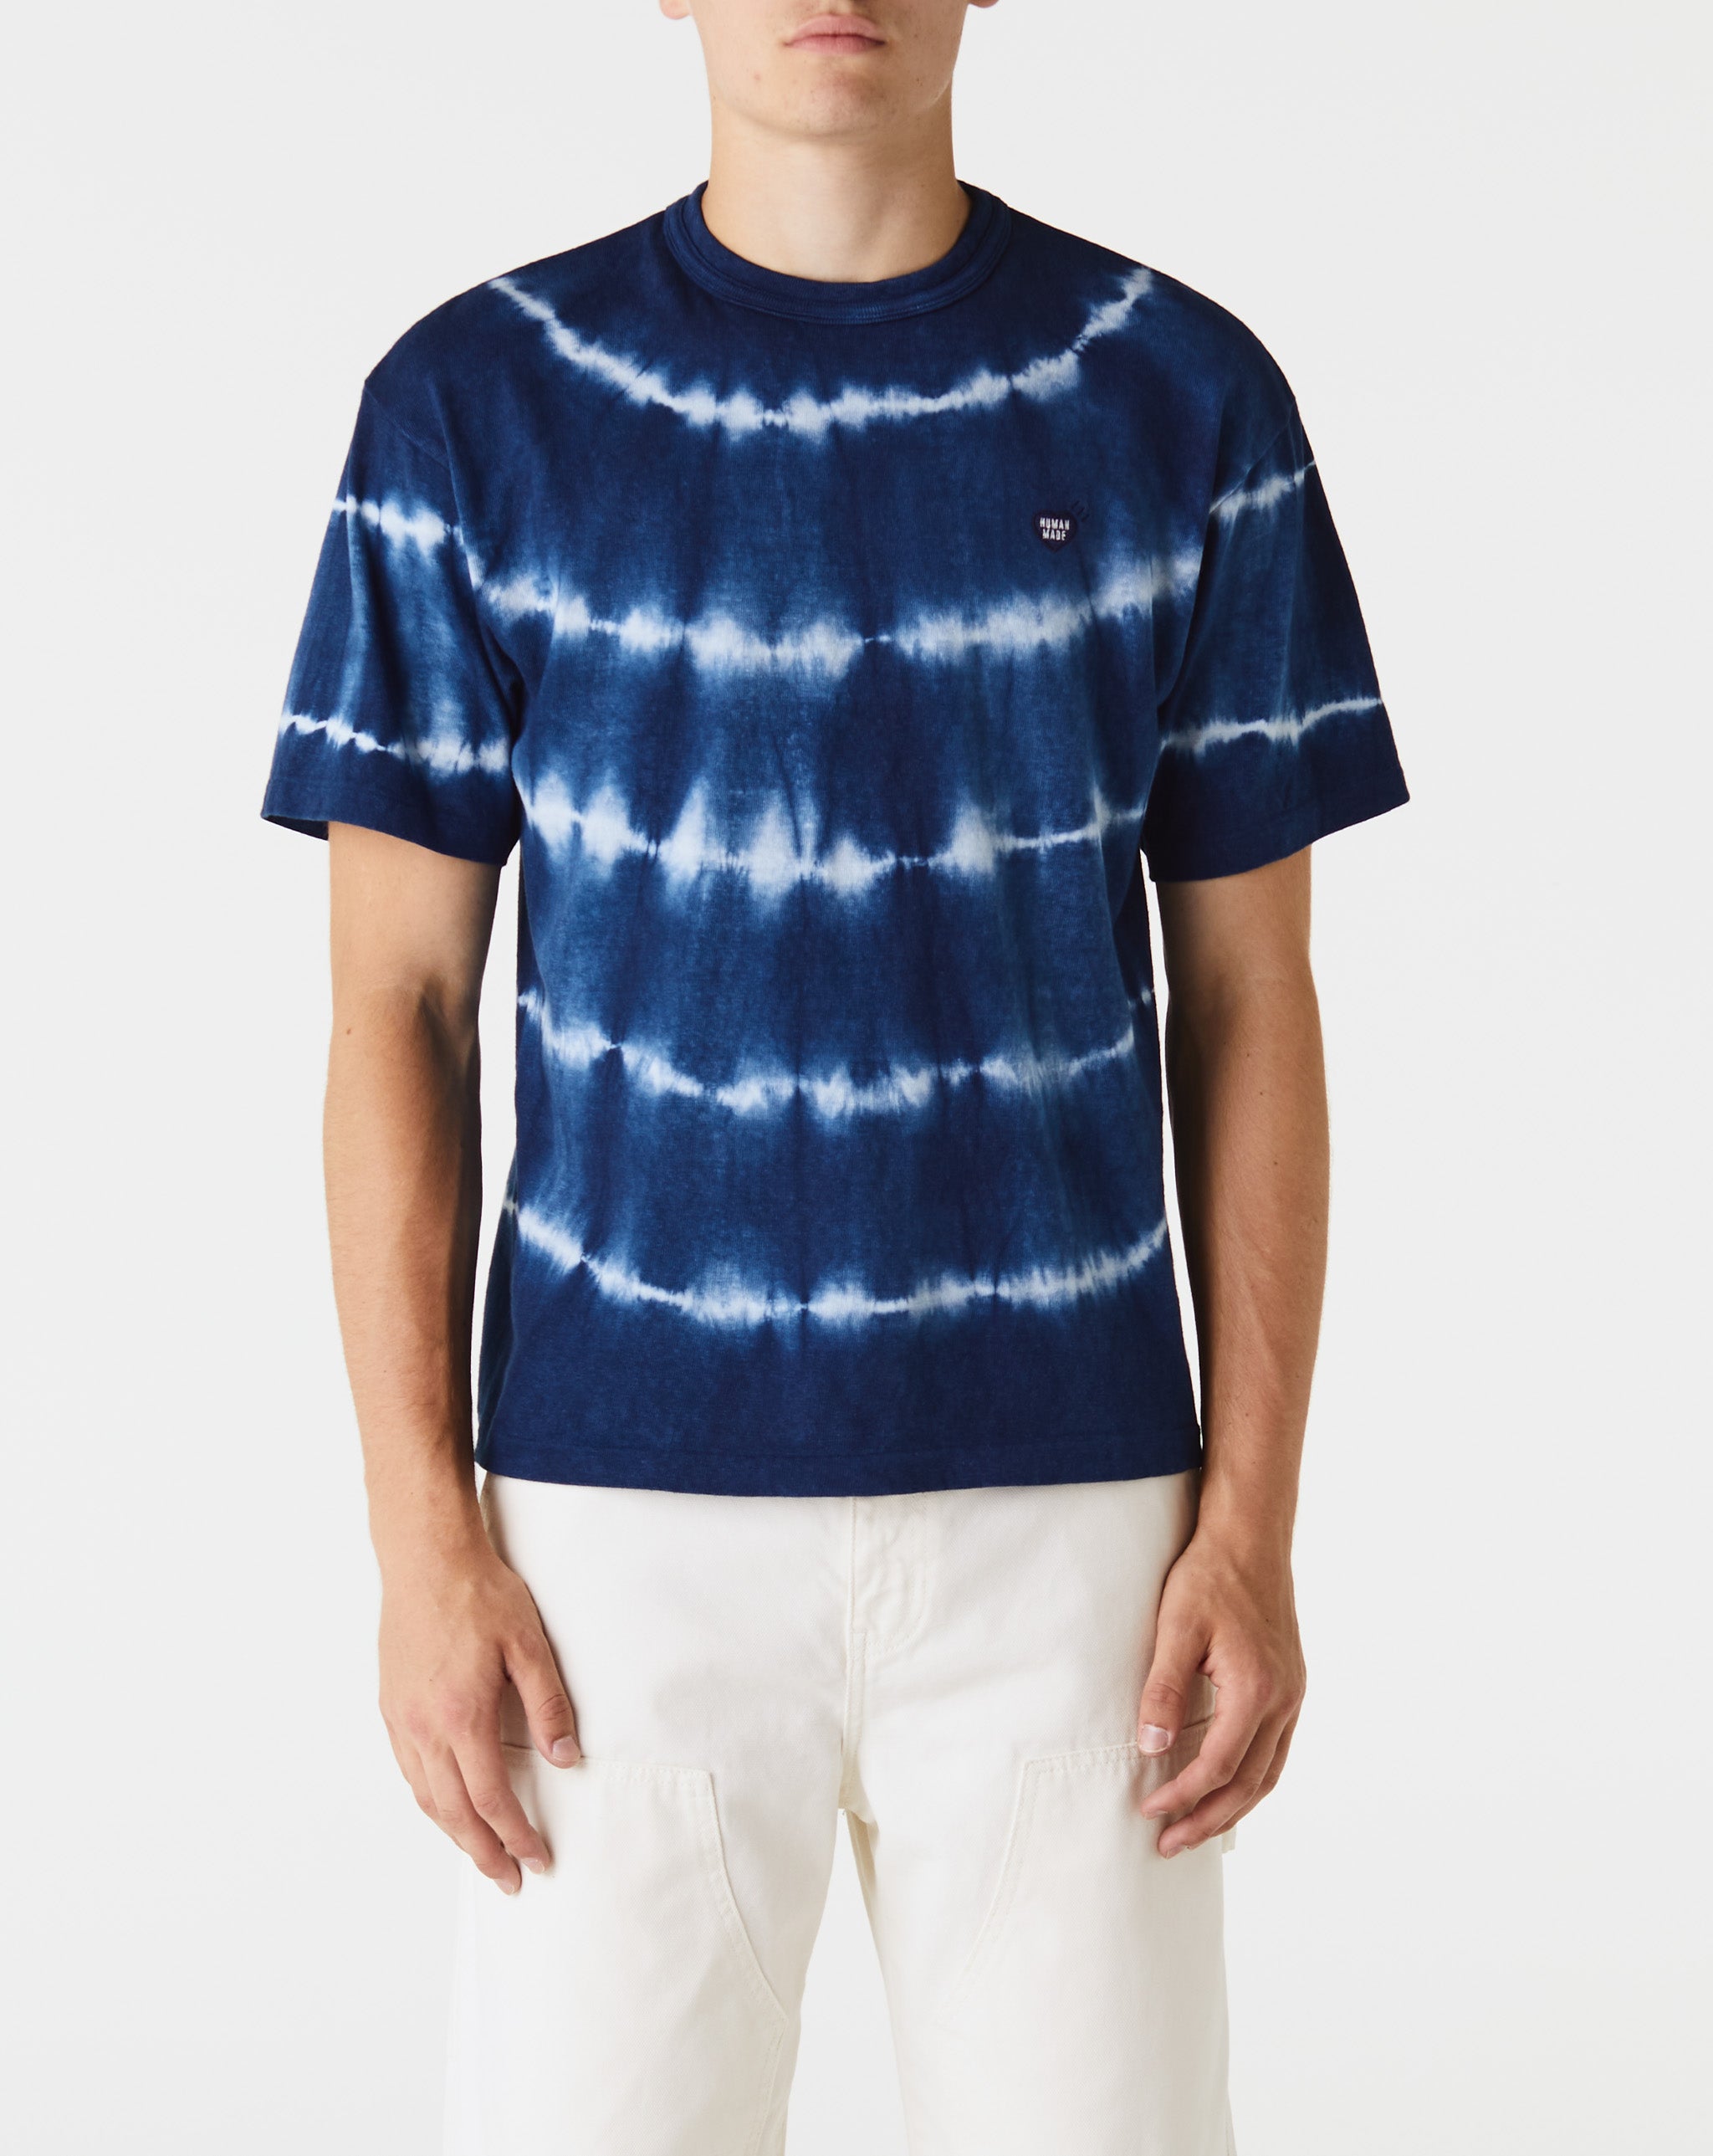 Indigo Dyed T-Shirt #2 – Xhibition